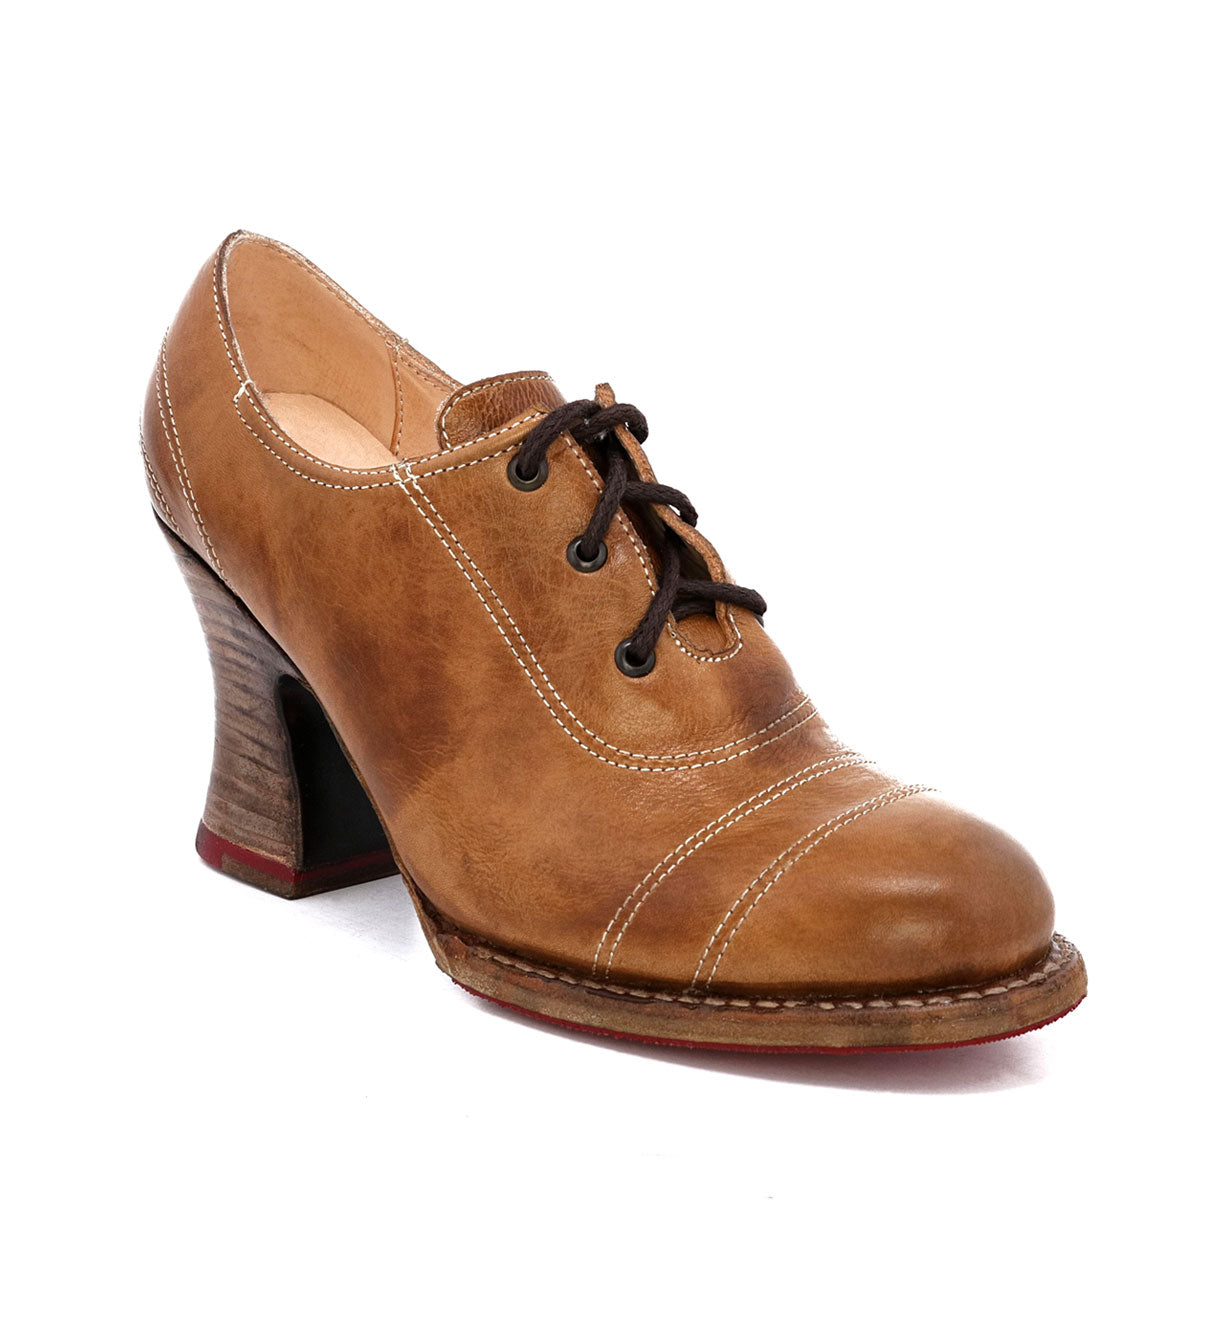 An enchanting women's Oak Tree Farms brown leather Nanny oxford shoe.